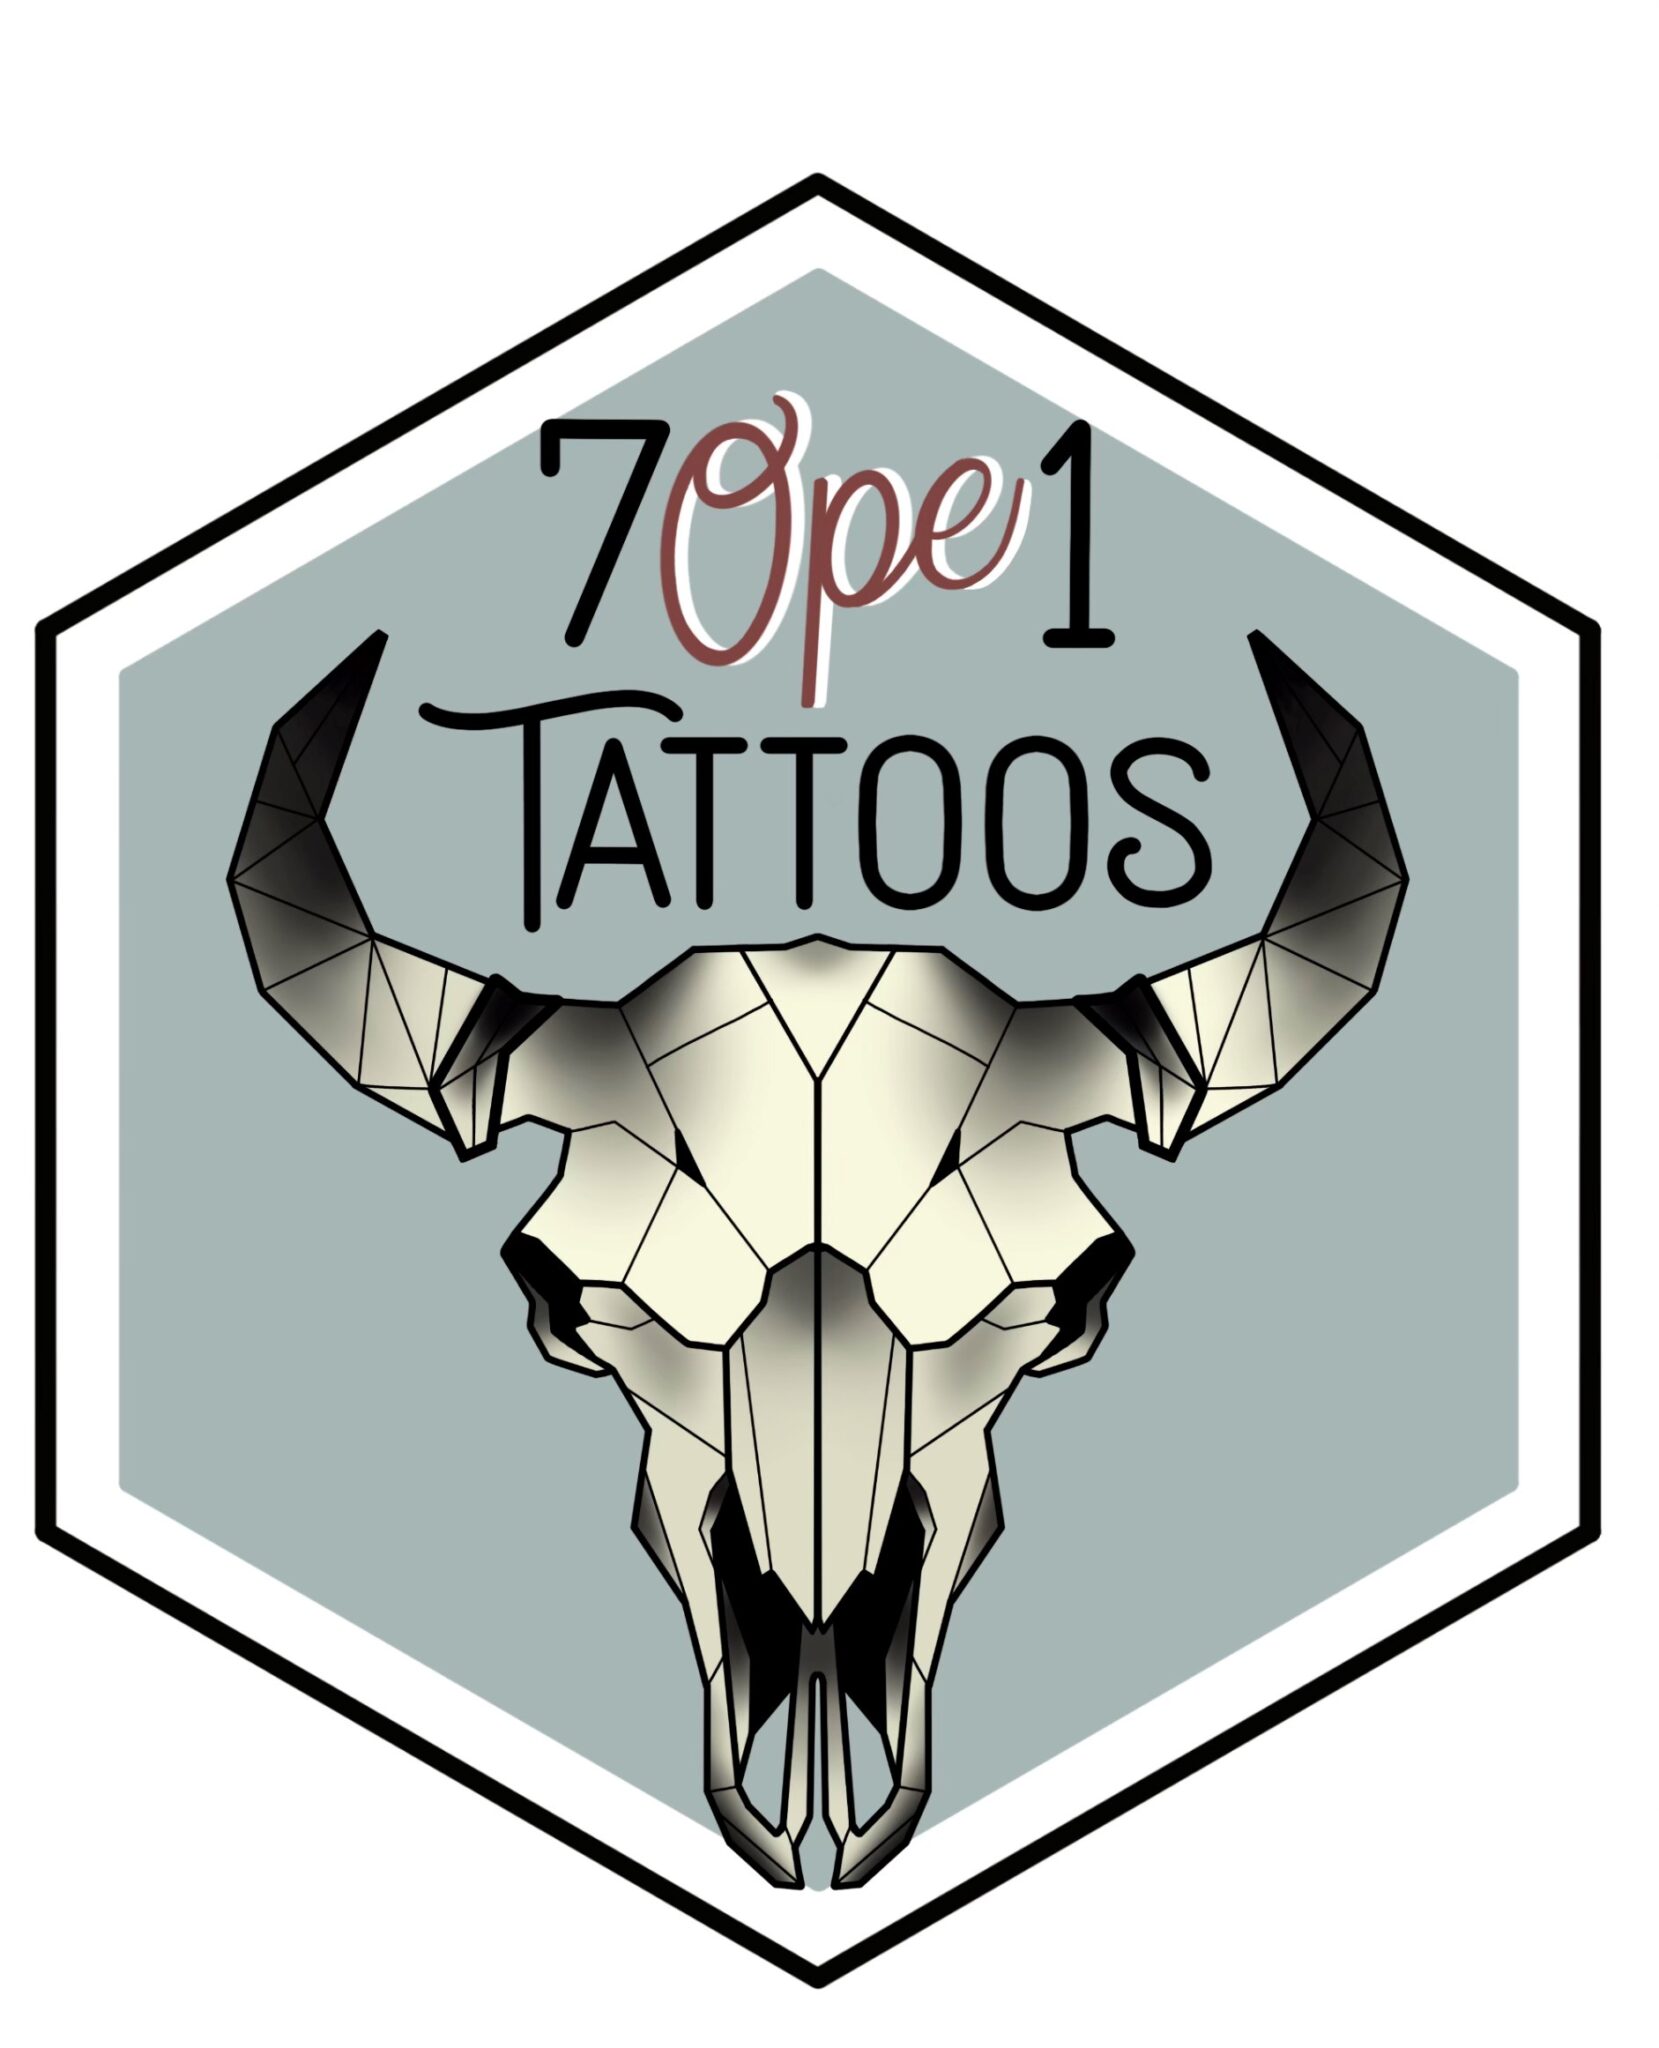 7 Ope 1 Tattoo